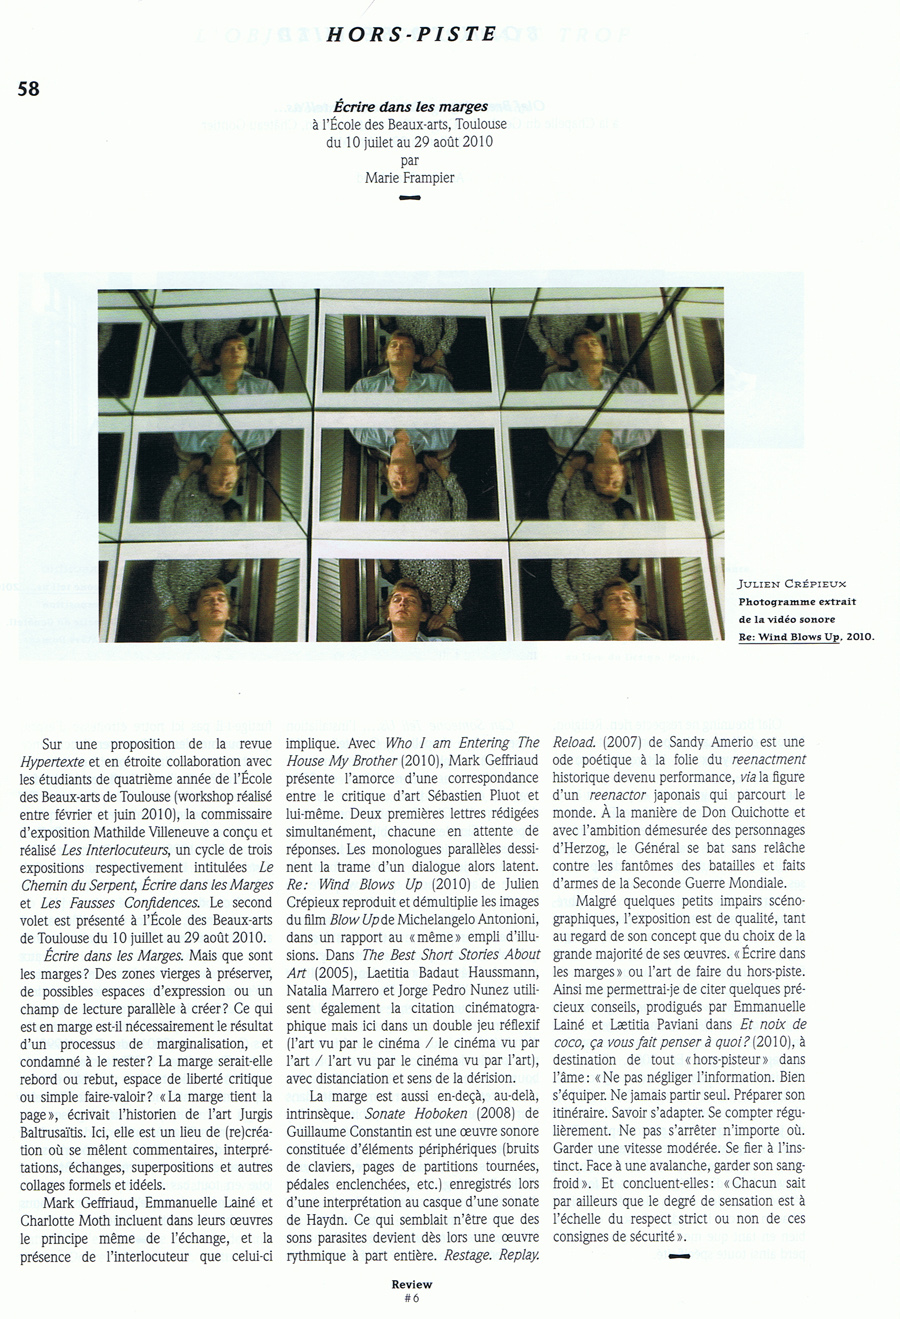 Article de marie Frampier pour ZroDeux (automne 2010)